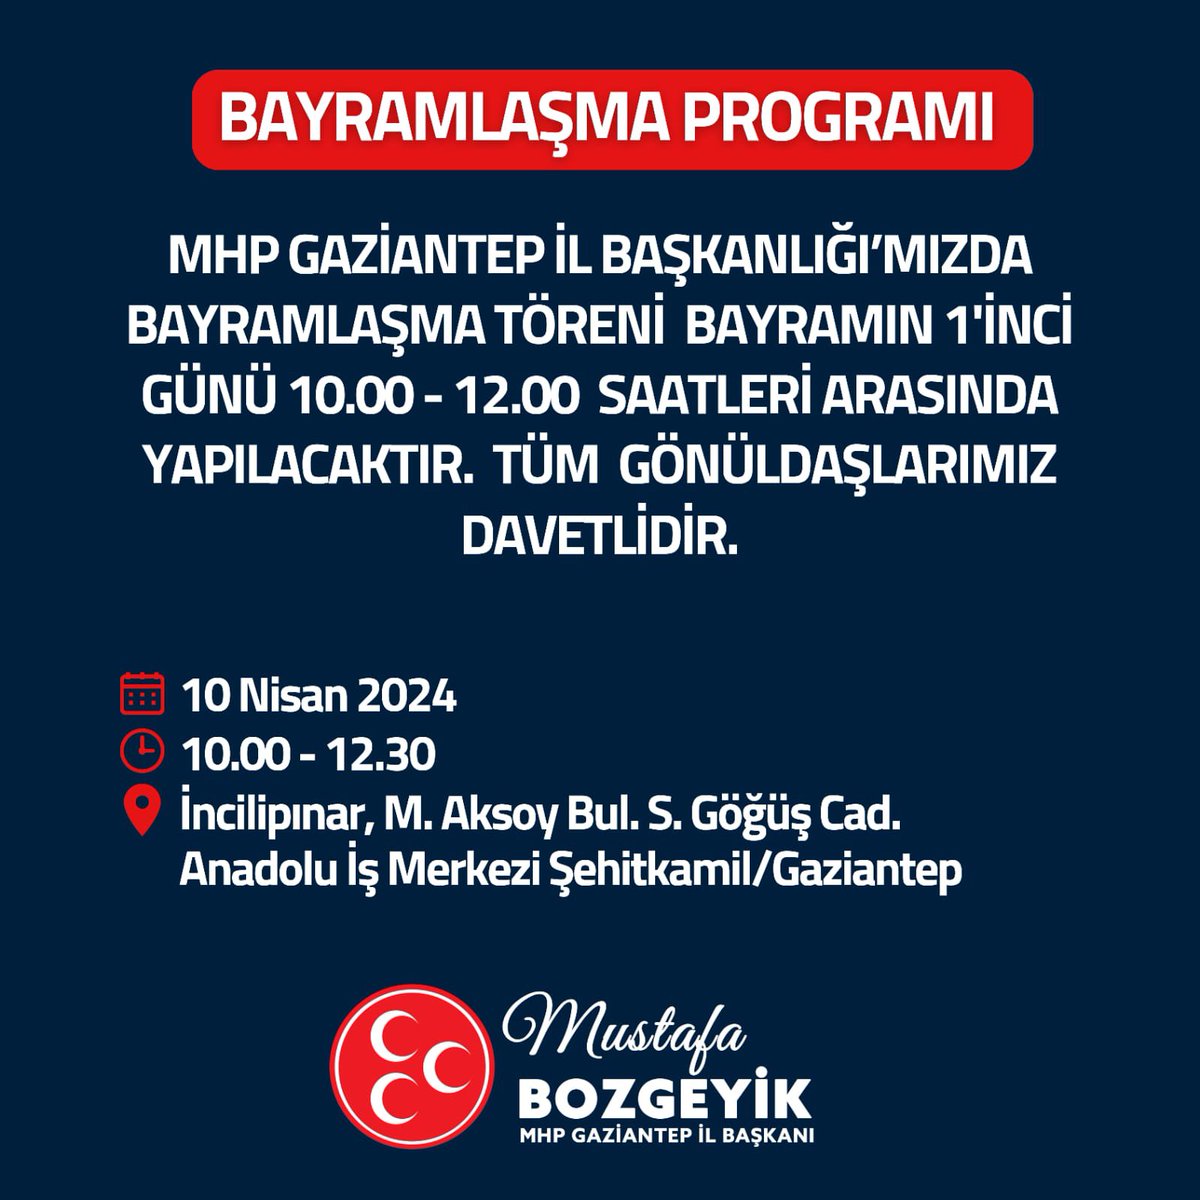 MHP Gaziantep İl Başkanlığımızda bayramlaşma töreni bayramın 1’inci günü 10:00 - 12:00 saatleri arasında yapılacaktır. Tüm gönüldaşlarımız davetlidir. @MBozgeyiktr